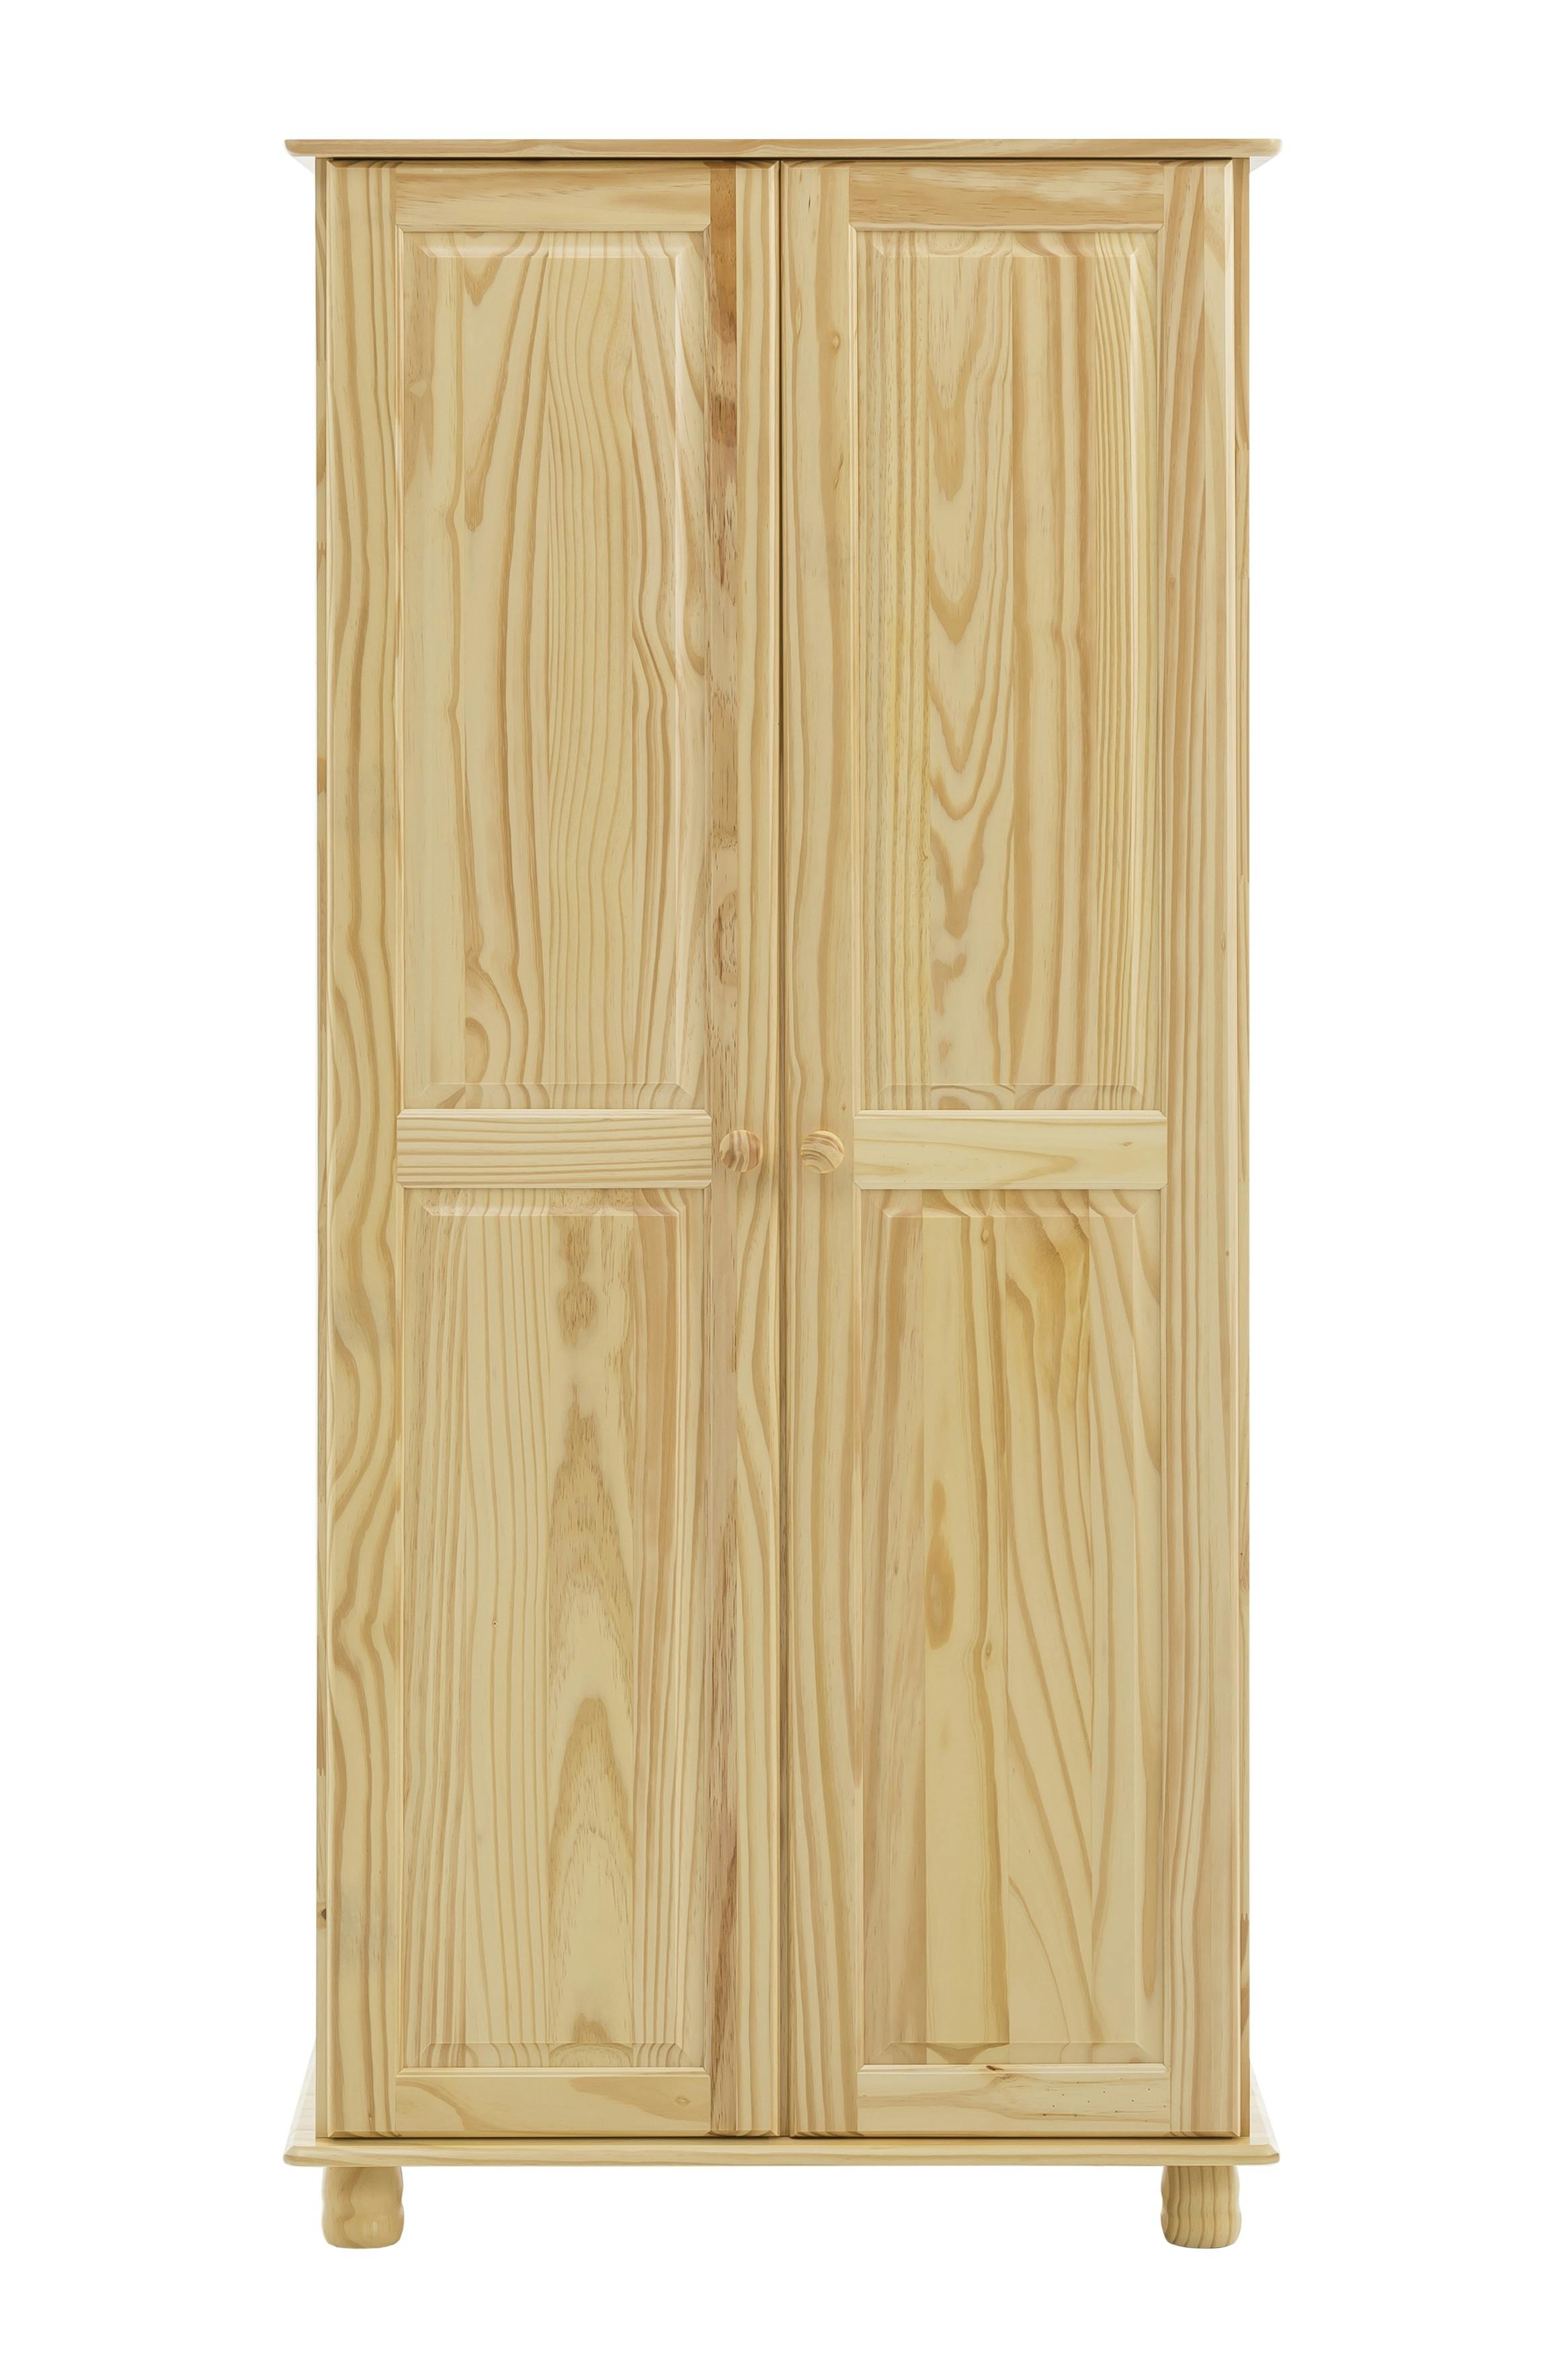 SIT Möbel Kleiderschrank mit 2 Türen | Kiefer-Holz massiv | B 82 x T 52 x H  170 cm | natur | 19000-68 | Serie SCHRANK | METRO Marktplatz